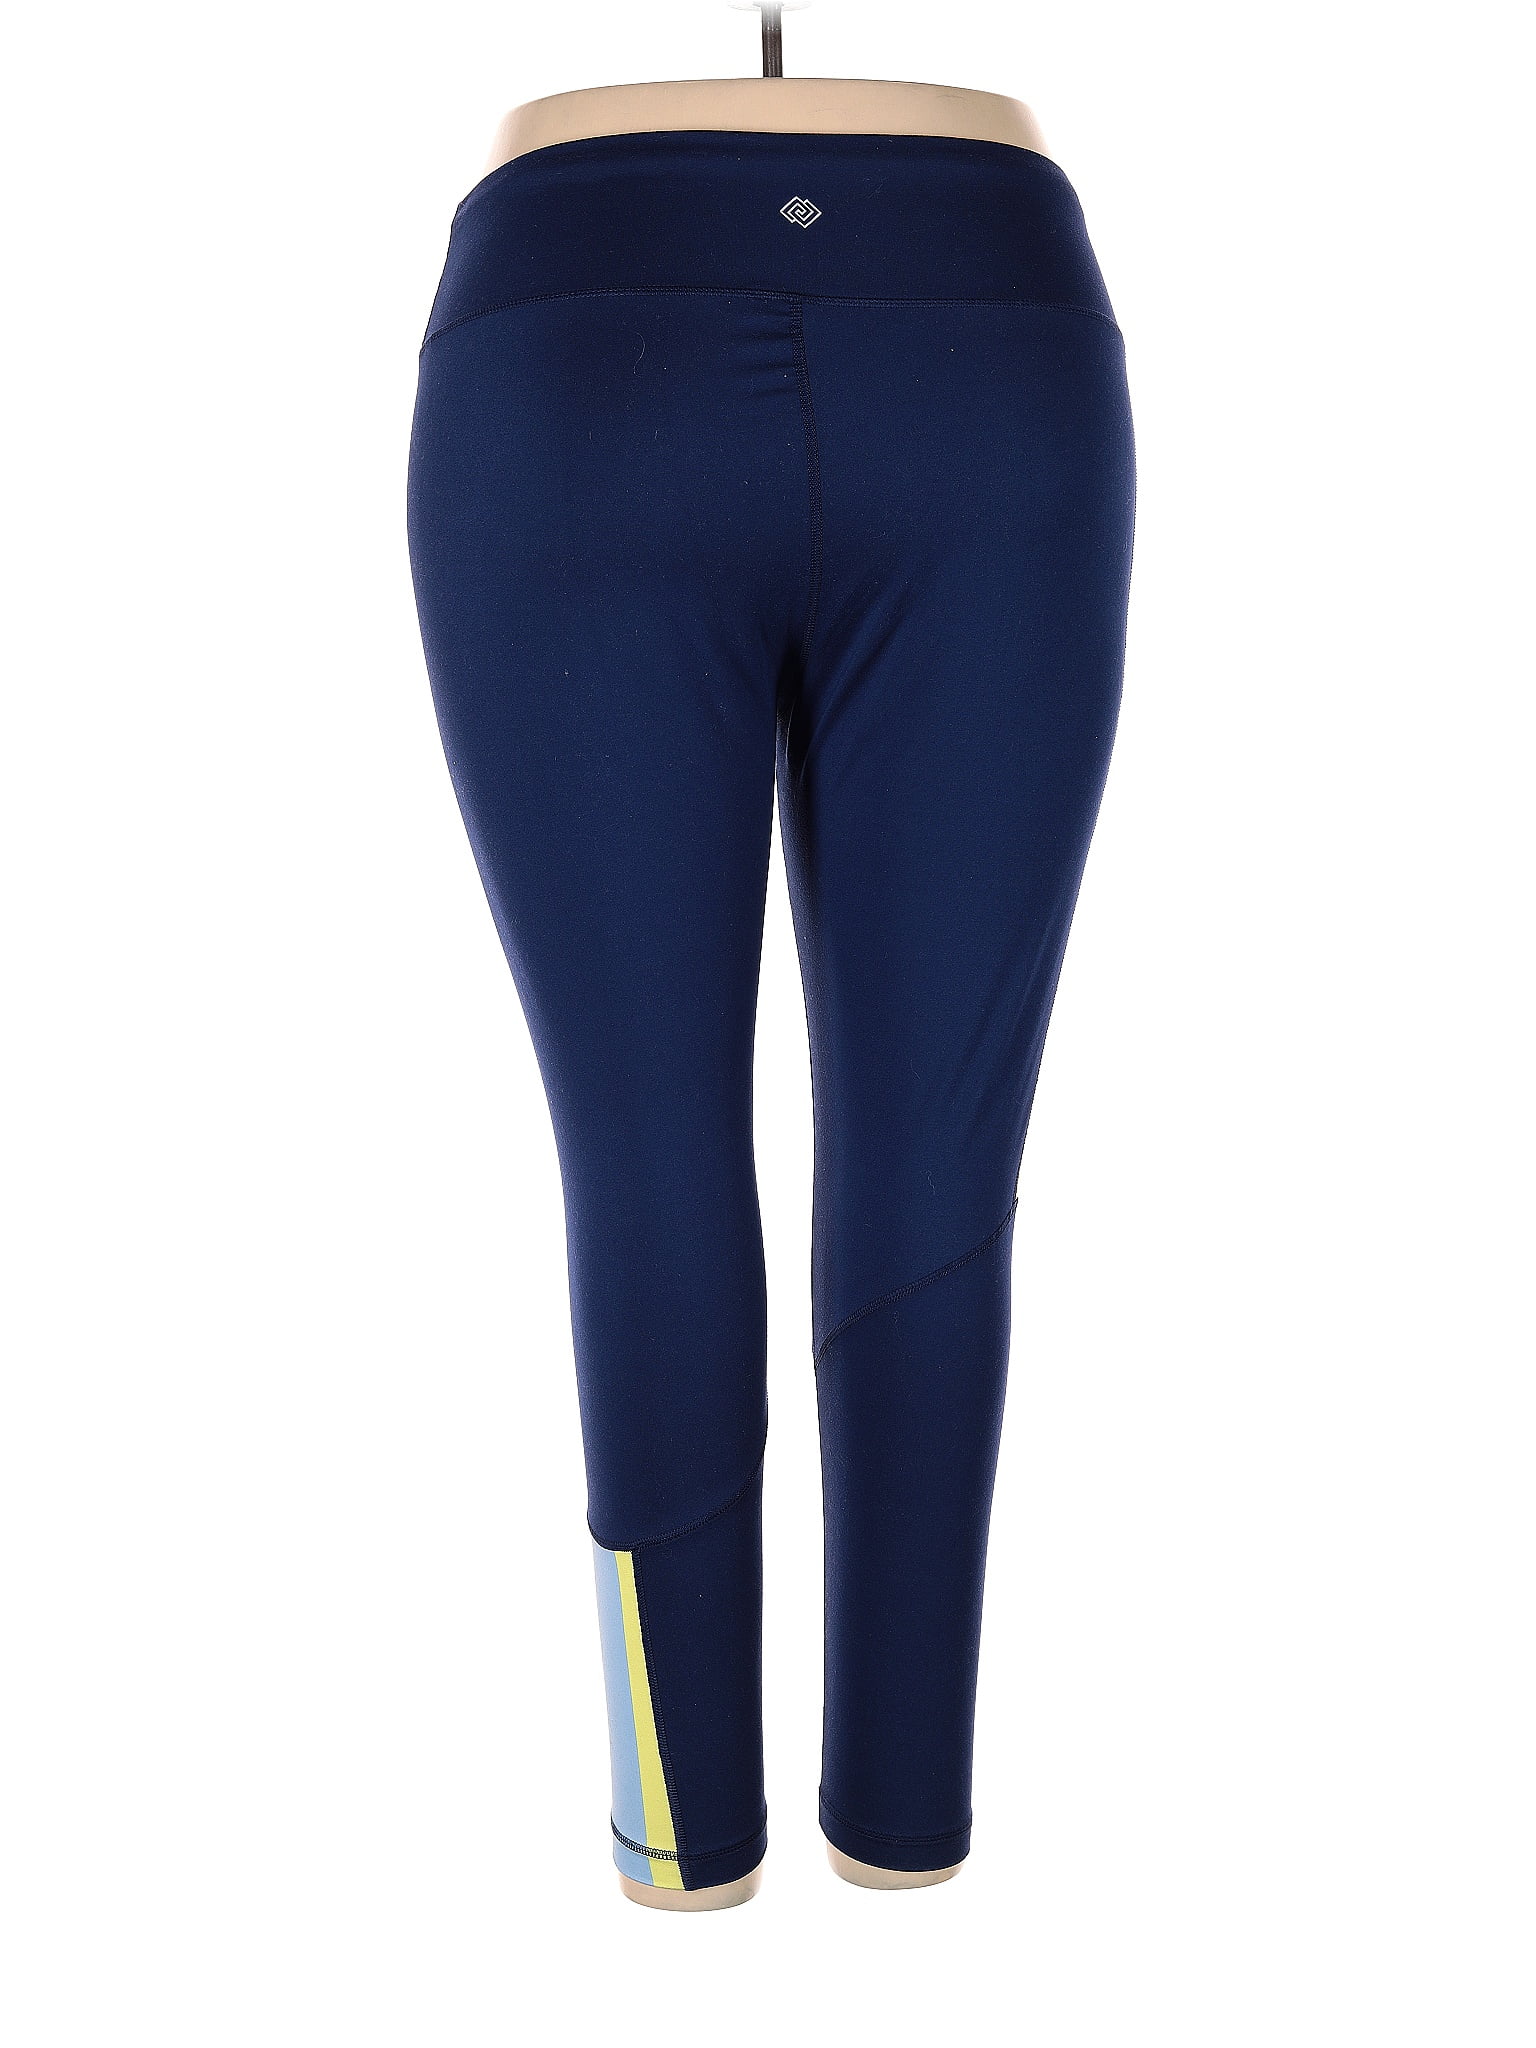 Zelos Navy Blue Active Pants Size 3X (Plus) - 61% off